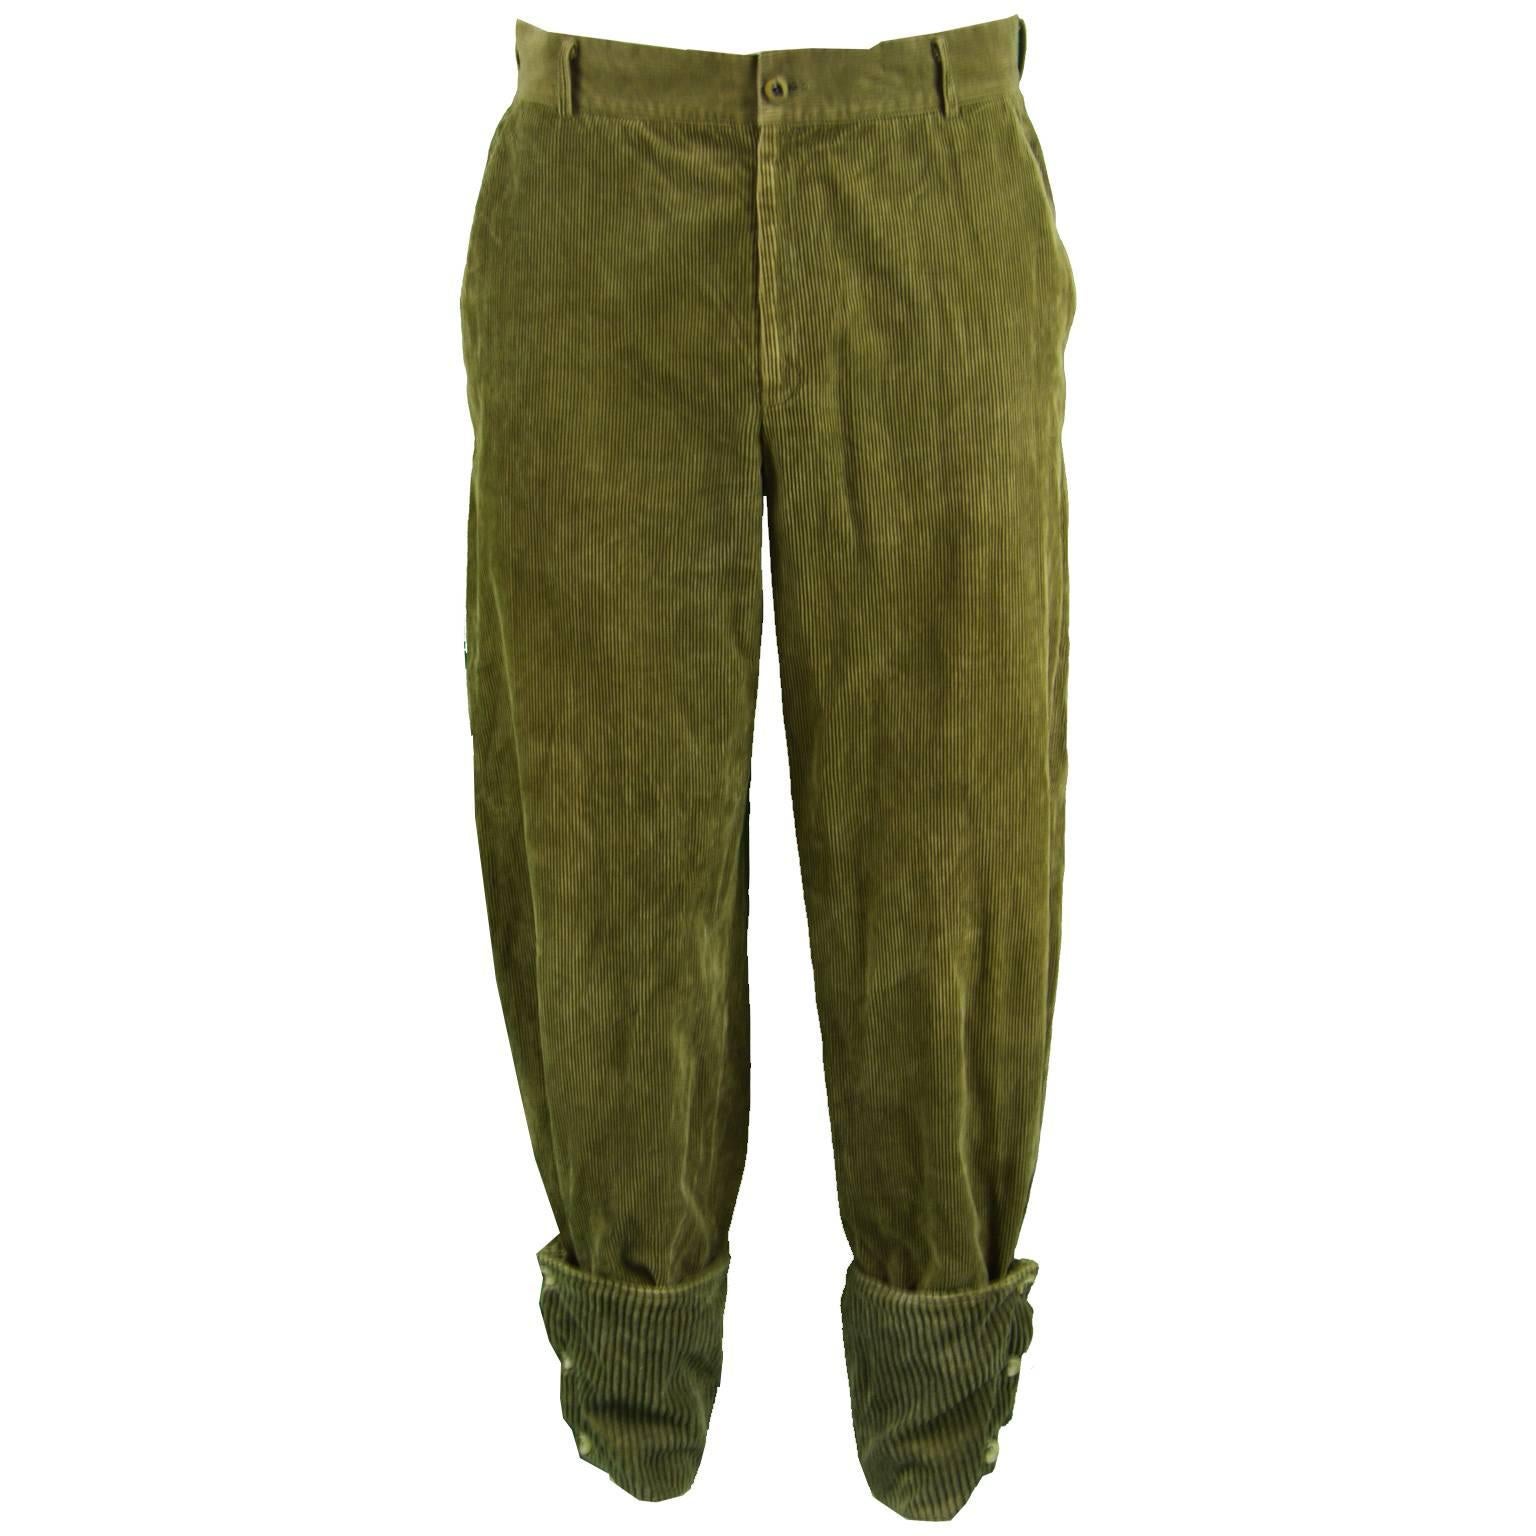 Gianni Versace Men's Green Corduroy Pants with Jumbo Cord Turn Ups ...